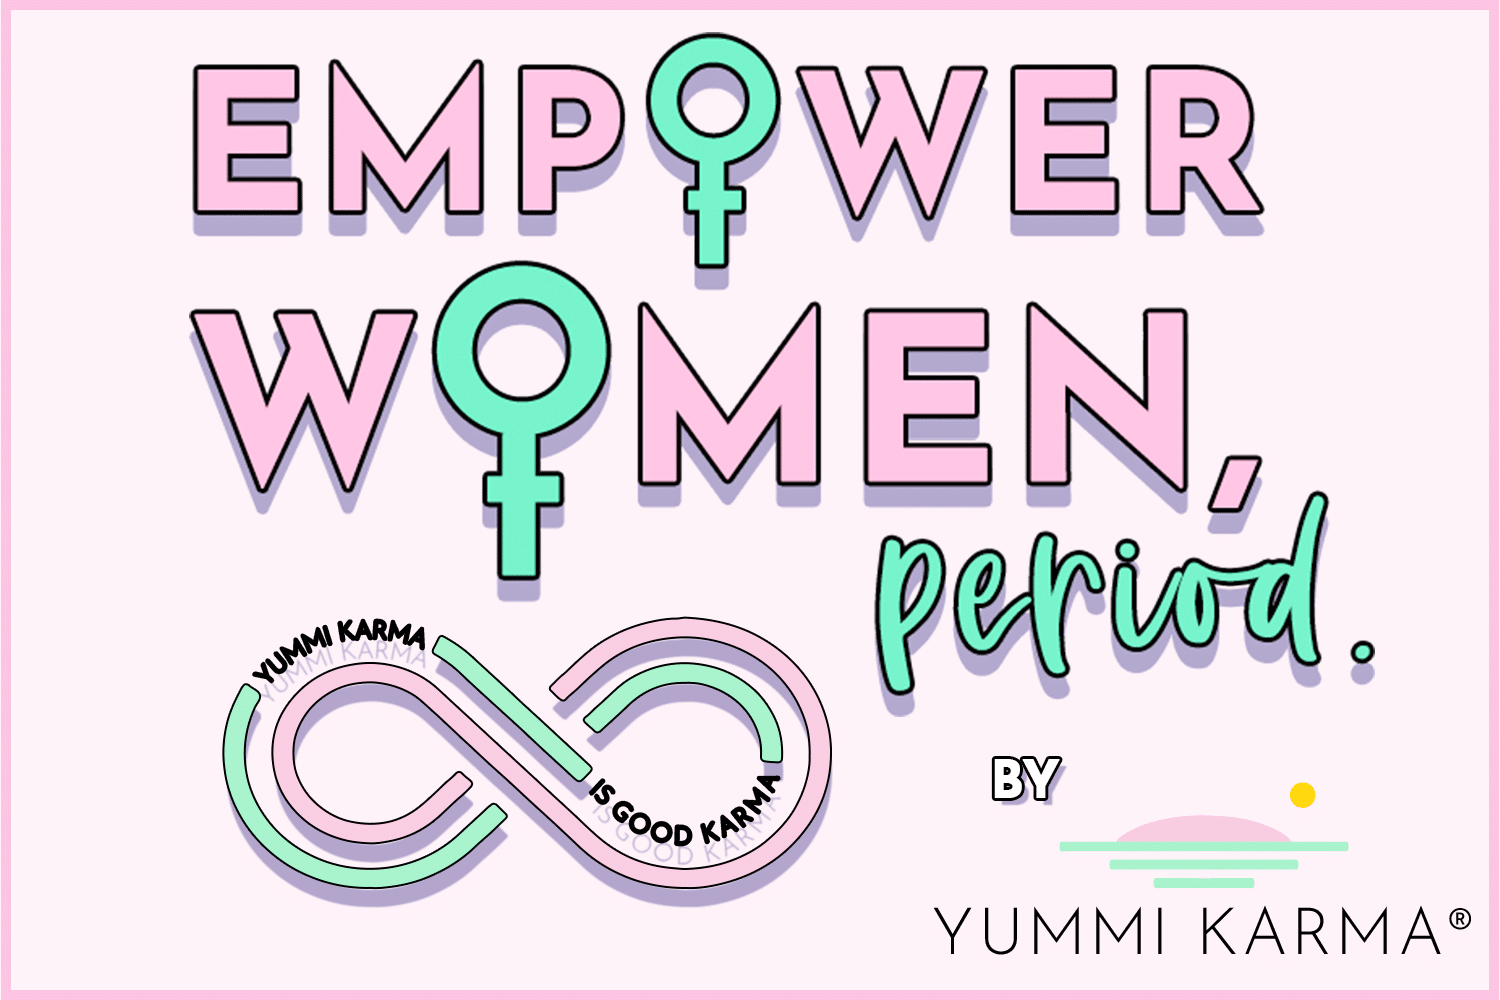 Empower Women Period